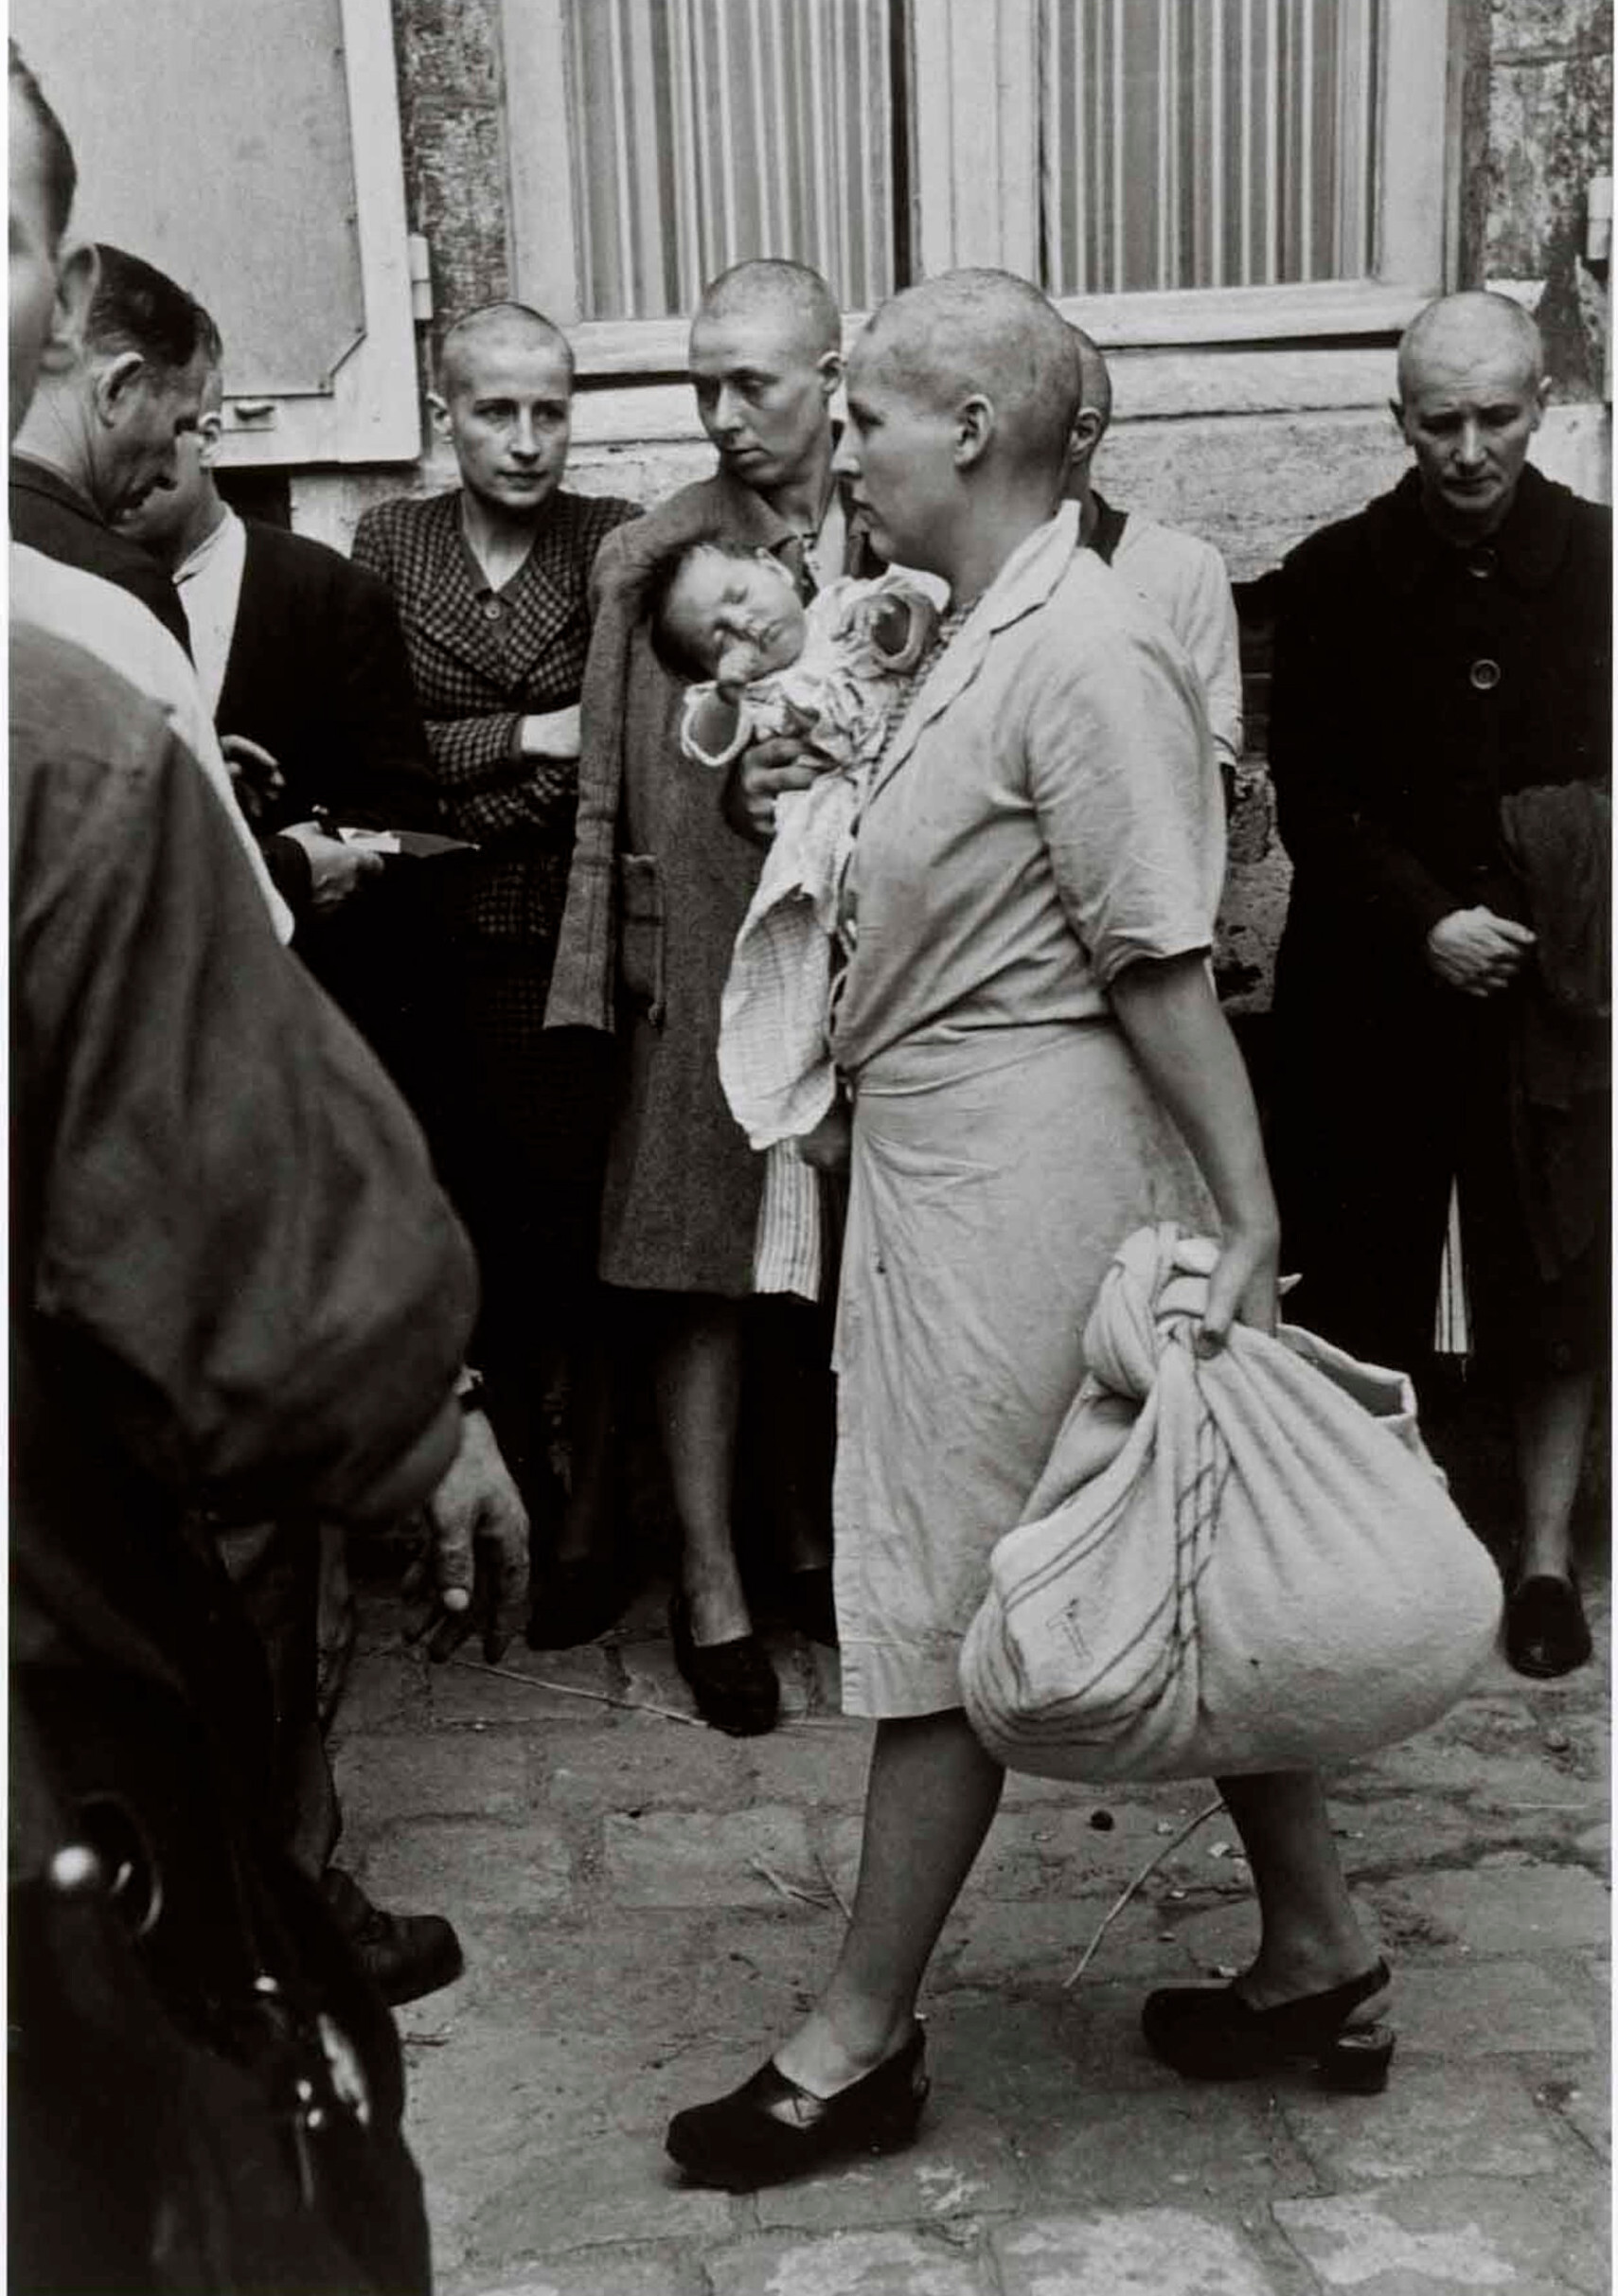 Французская женщина с ребенком, которого она родила немецкому солдату, была наказана бритьем головы, Шартр, Франция, 18 августа 1944 год. Фотограф Роберт Капа